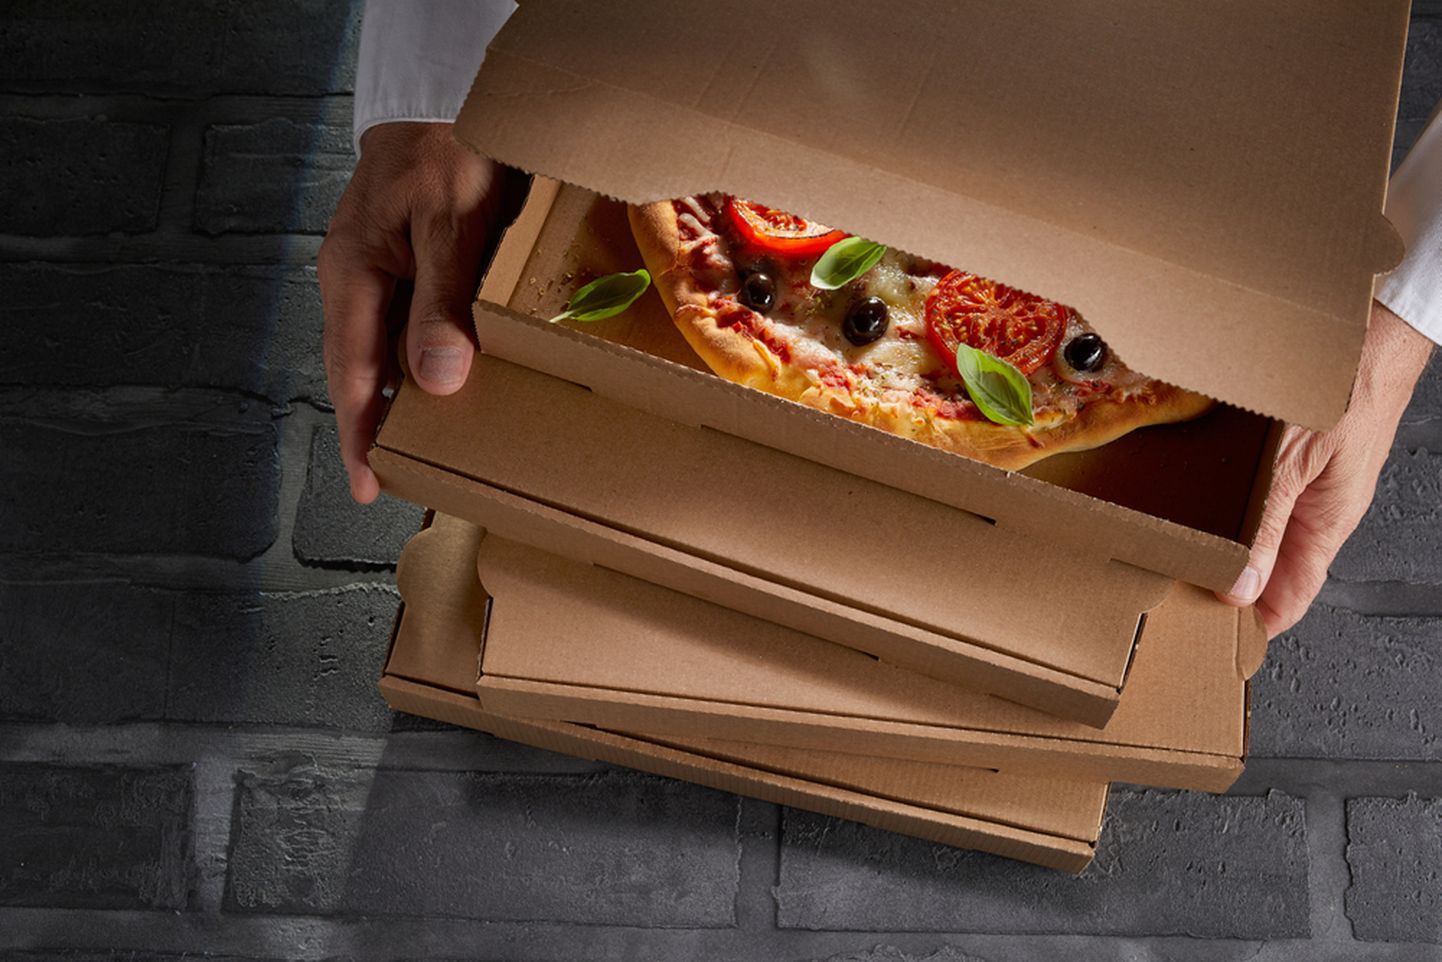 Коробка для пиццы. Иллюстративное фото.